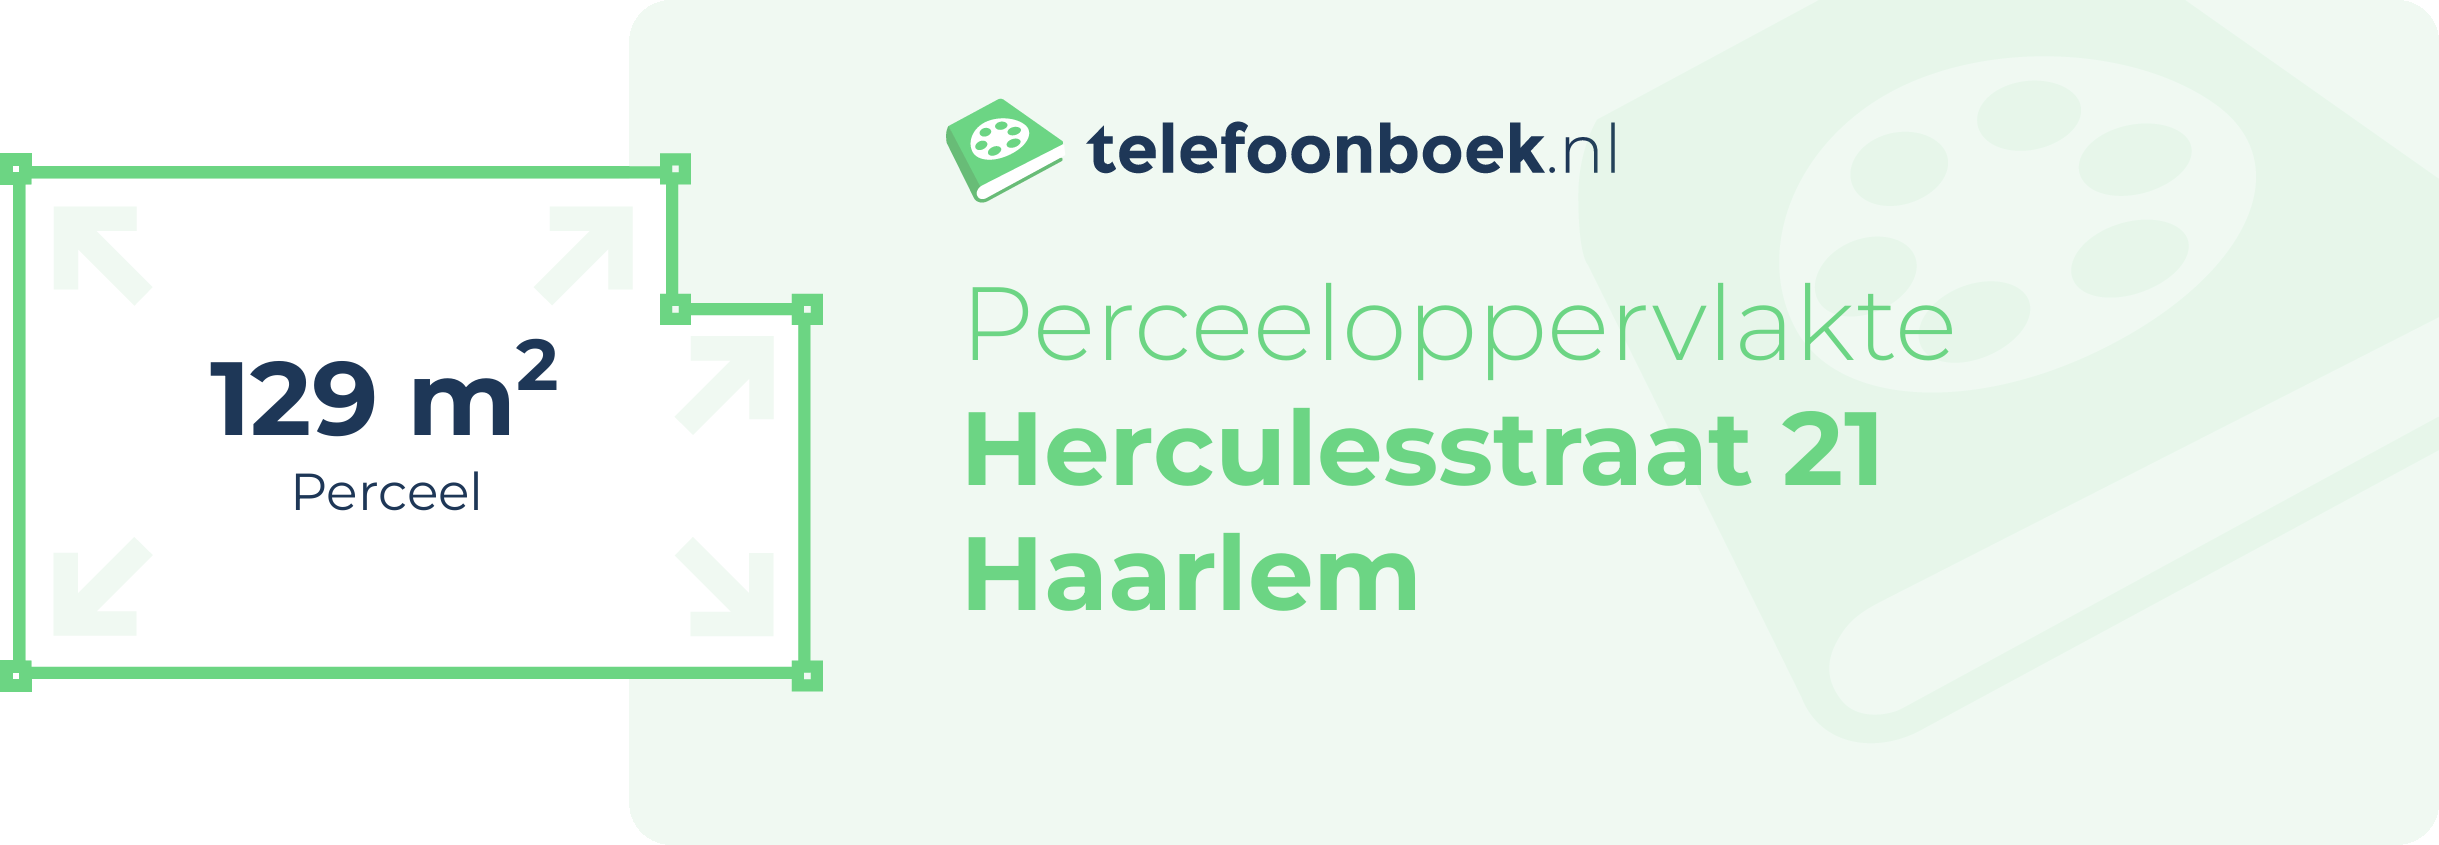 Perceeloppervlakte Herculesstraat 21 Haarlem